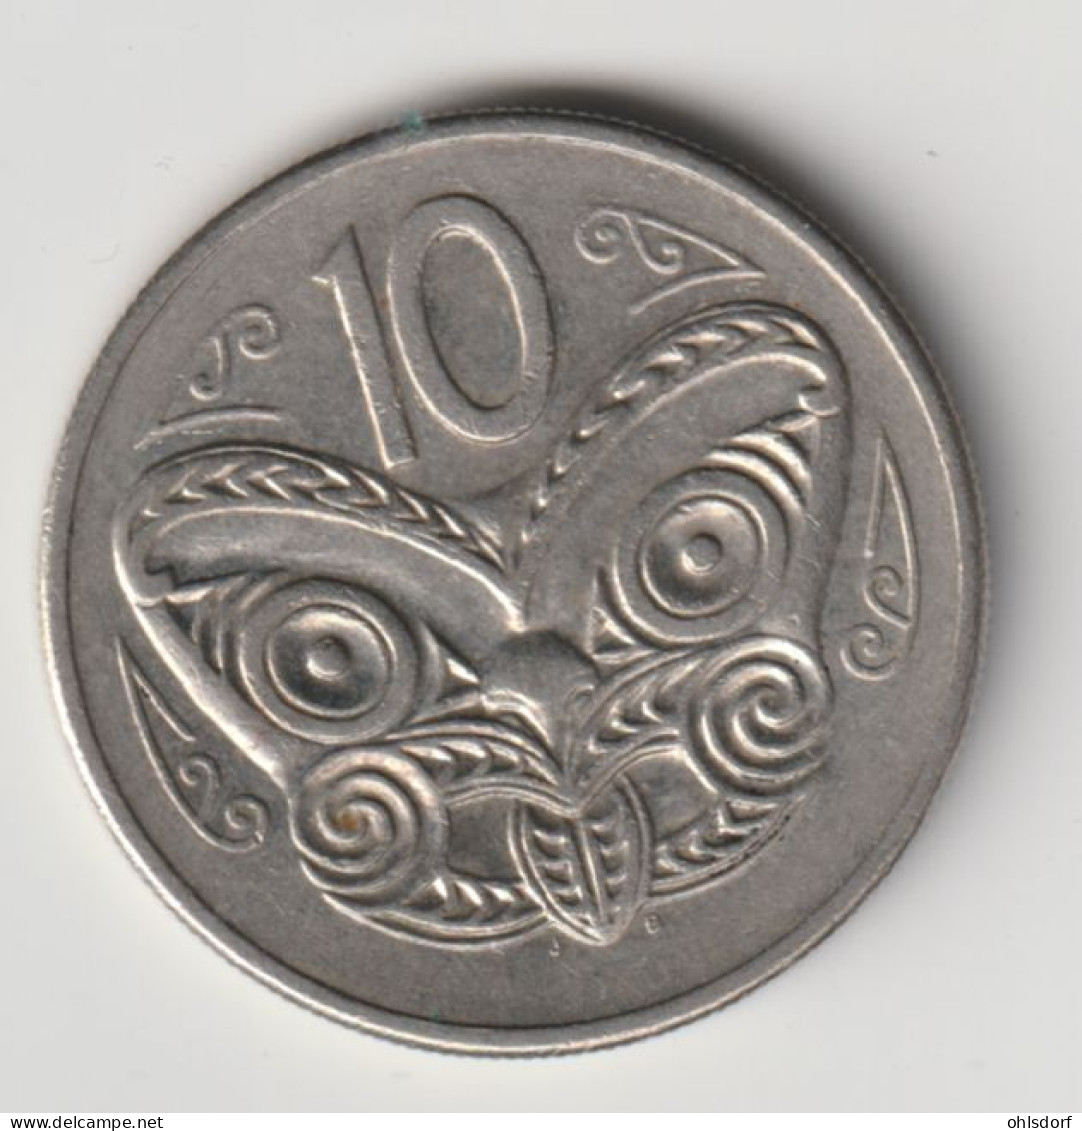 NEW ZEALAND 1980: 10 Cents, KM 41 - Neuseeland